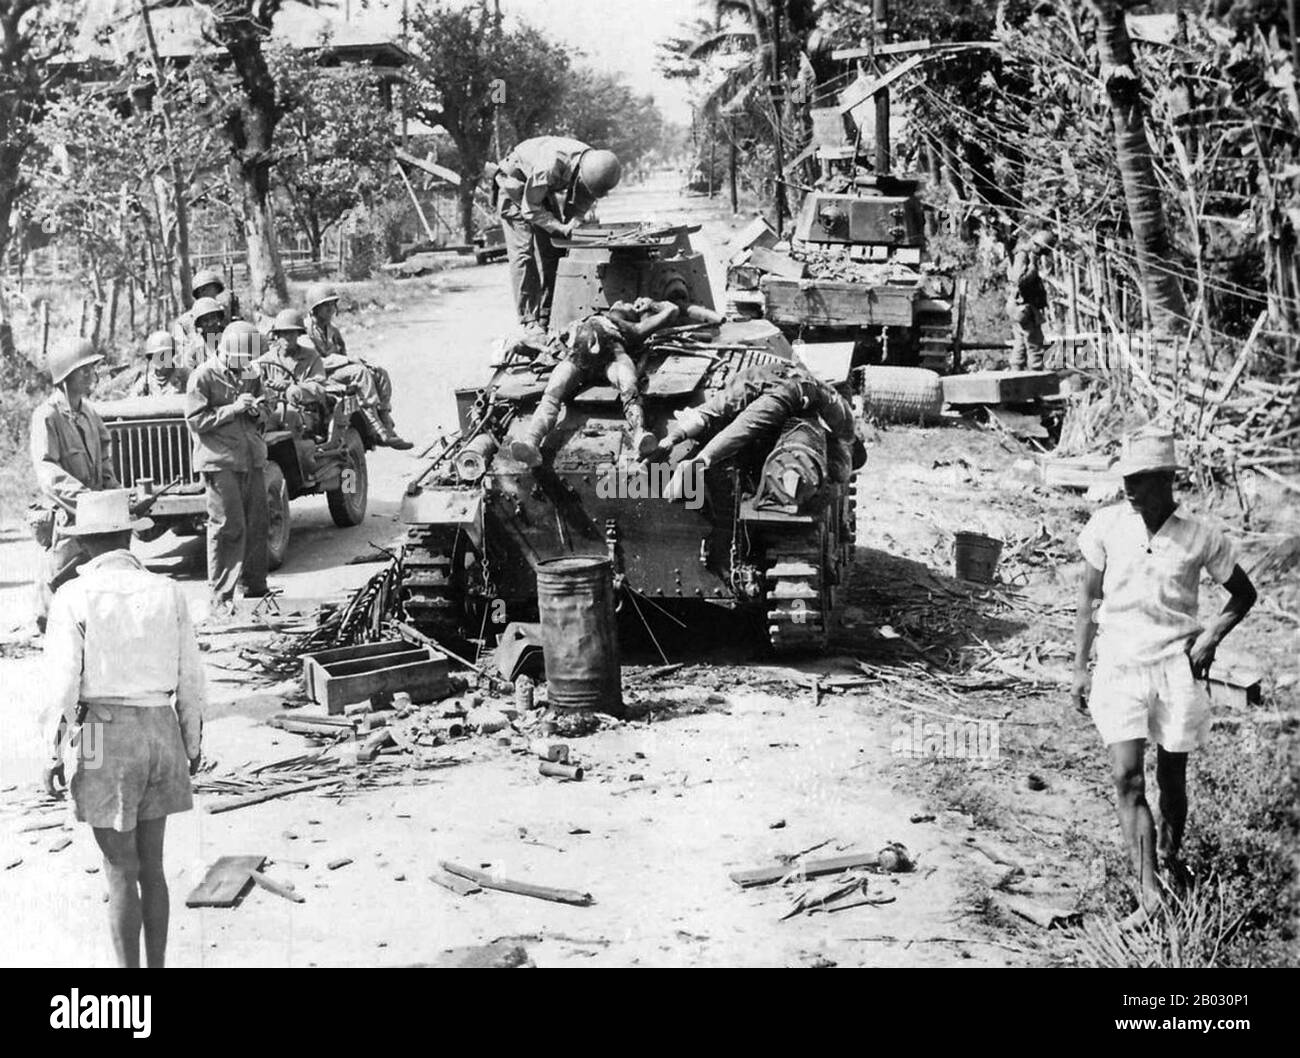 Die Schlacht von Luzon war eine Landschlacht, die im Rahmen des Pazifiktheaters der Operationen des zweiten Weltkriegs von den alliierten Streitkräften der USA, ihrer Kolonie auf den Philippinen und Verbündeten gegen Streitkräfte des Kaiserreichs Japan ausgetragen wurde. Die Schlacht führte zu einem Sieg der USA und Filipinos. Die Alliierten hatten bis März 1945 die Kontrolle über alle strategisch und wirtschaftlich wichtigen Orte Luzons übernommen, obwohl sich bis zur bedingungslosen Kapitulation Japans in den Bergen Taschen des japanischen Widerstands festhielten. Stockfoto